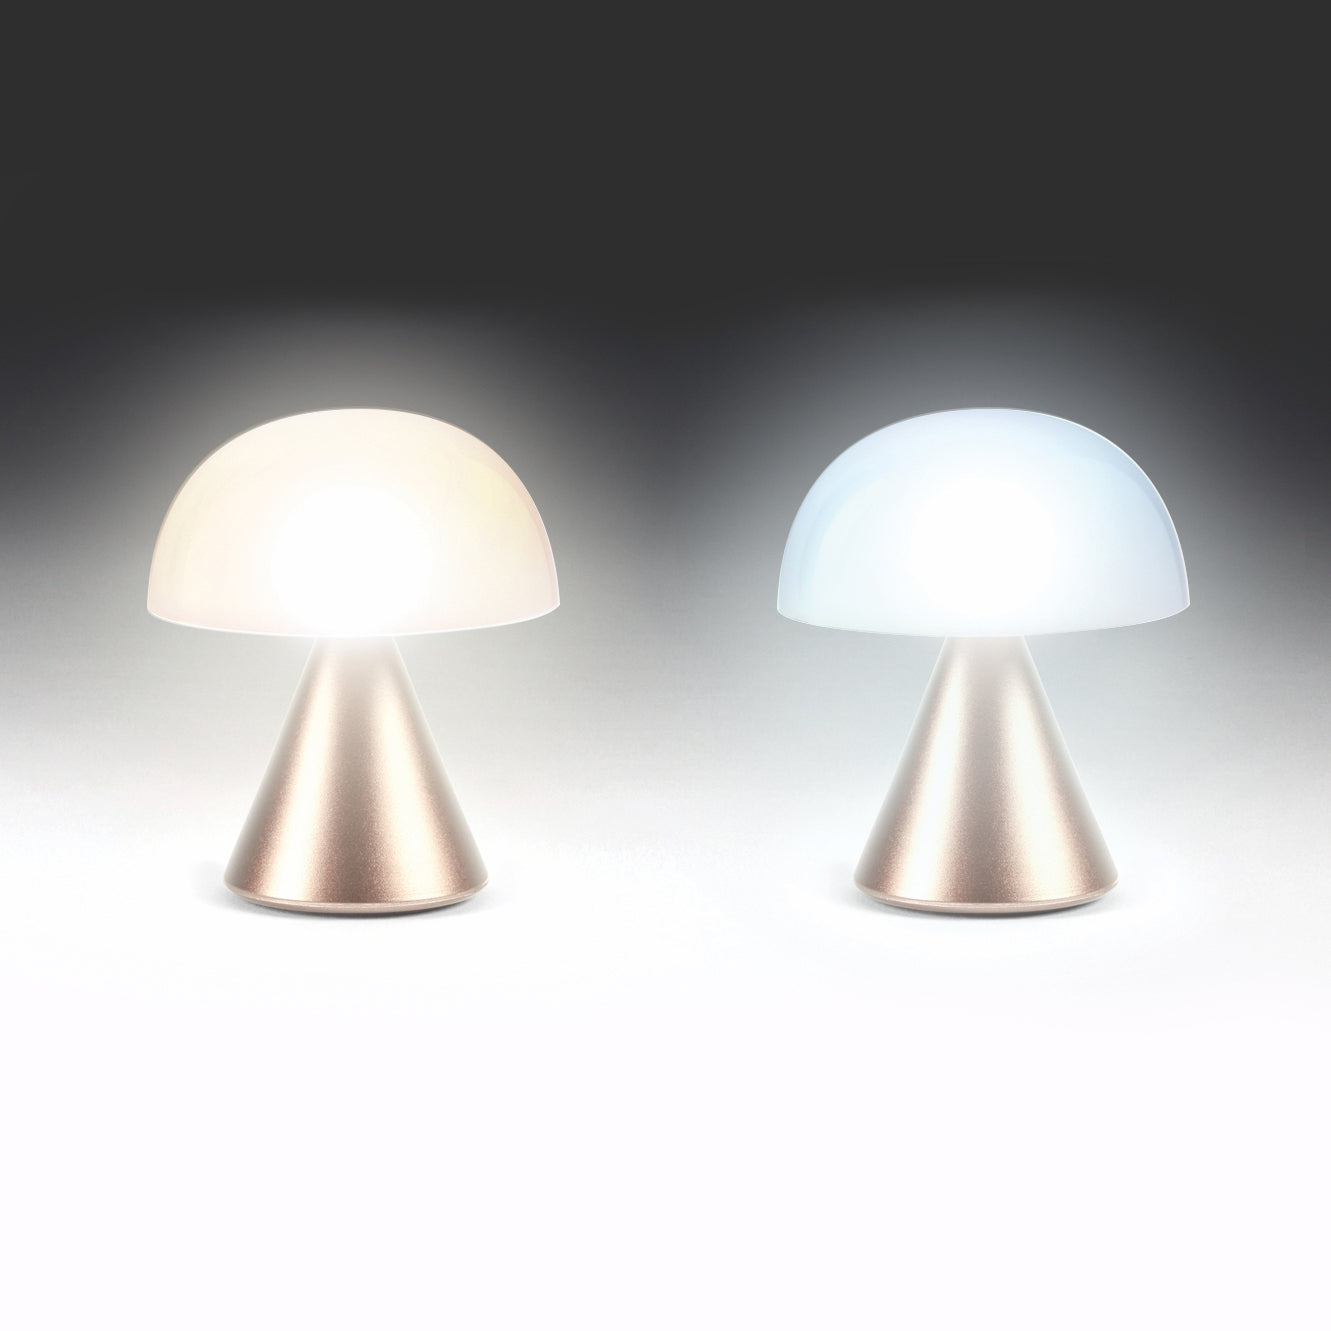 Lexon Mina Small Soft Gold│Oplaadbare LED lamp│art. LH60MD│warm en koud licht aan